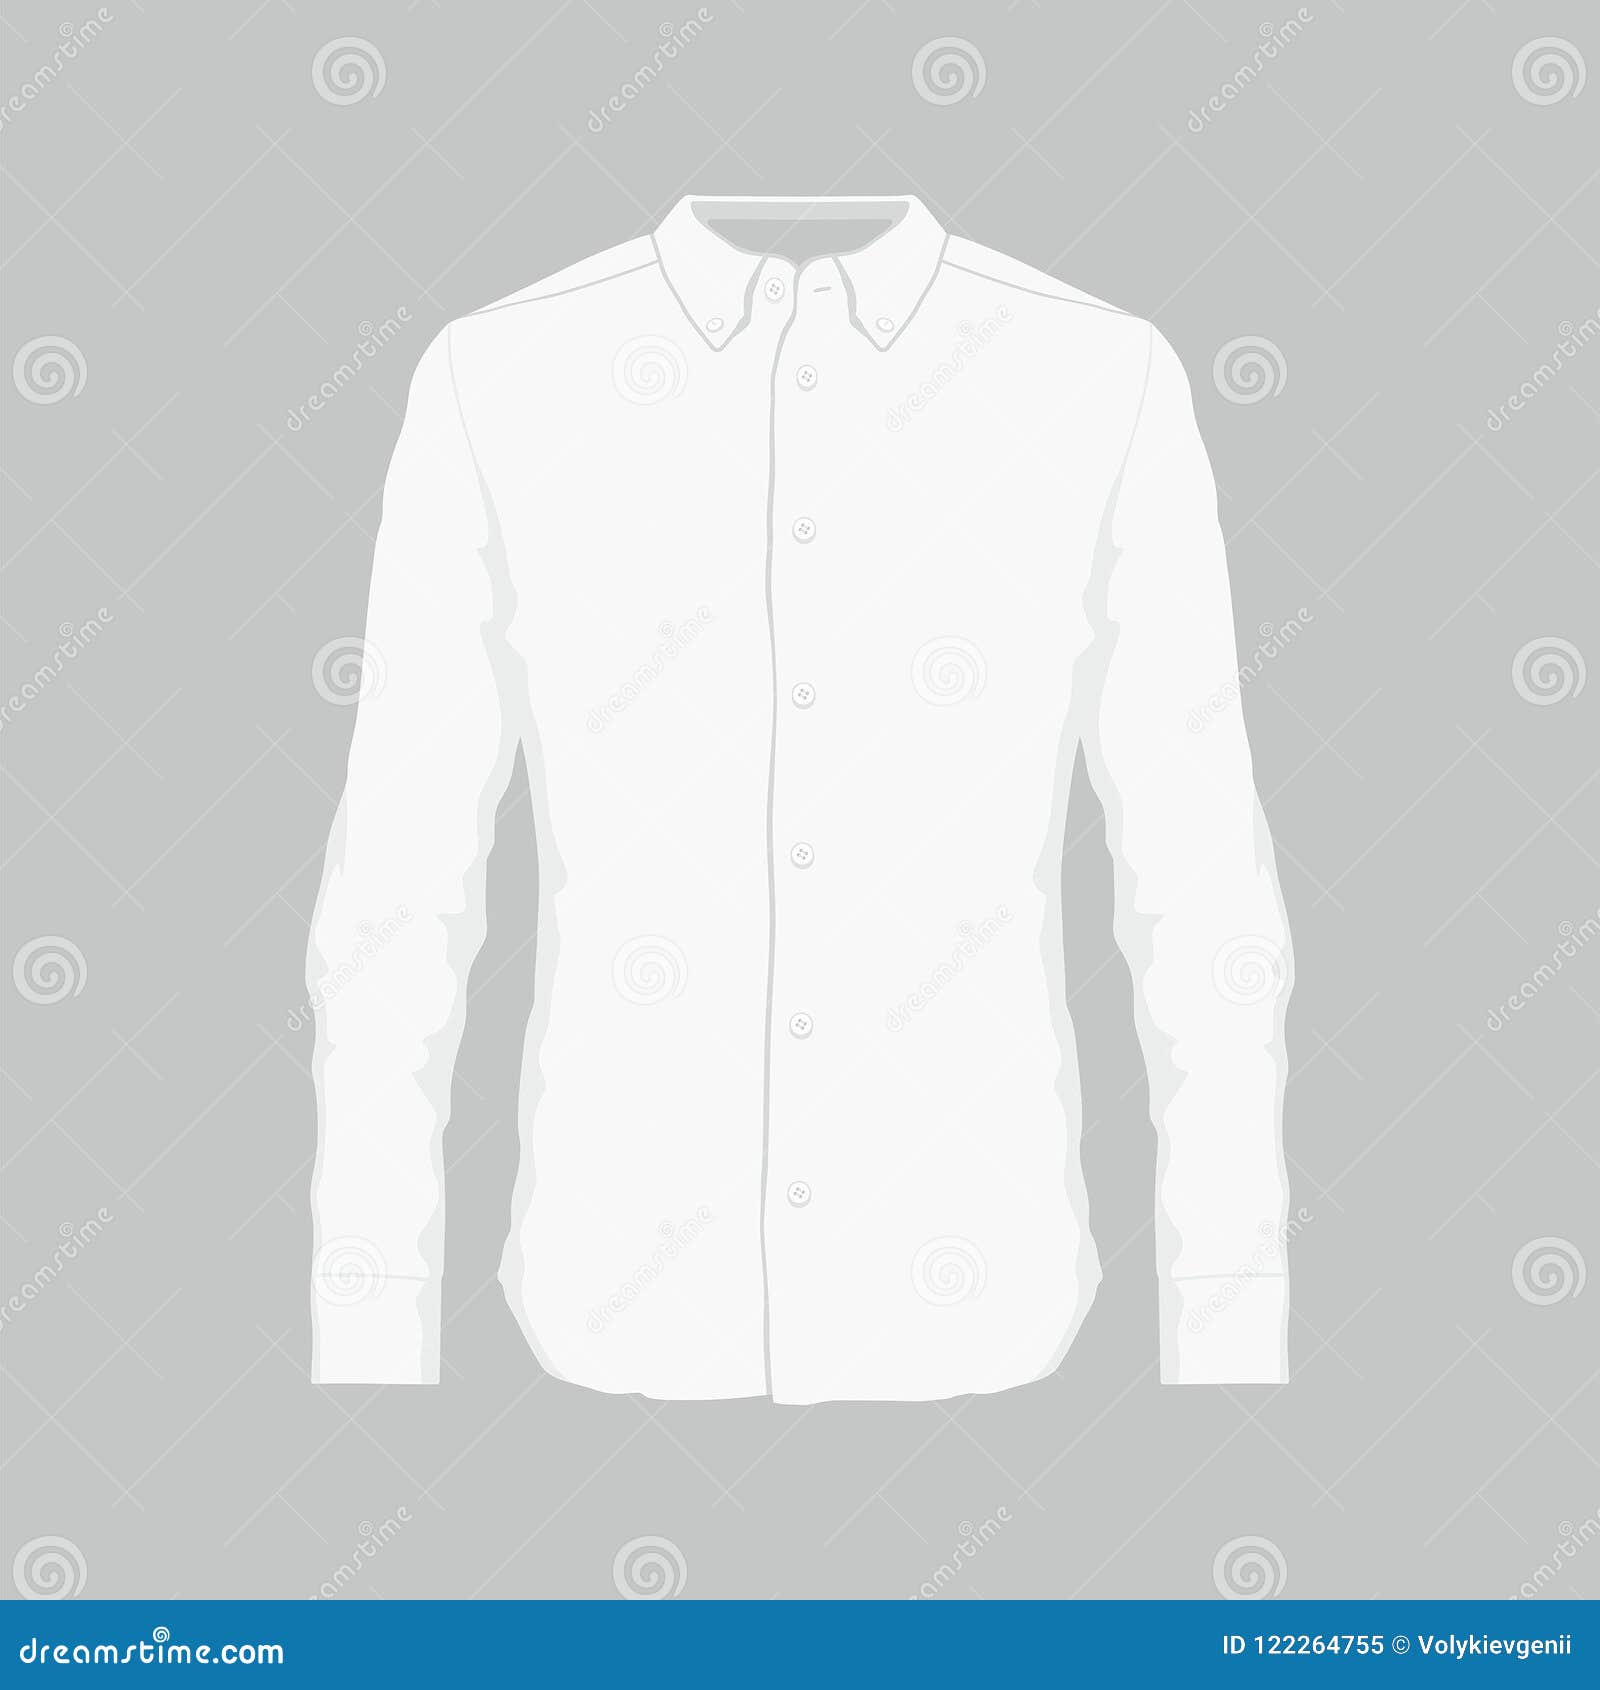 Men`s white dress shirt stock vector. Illustration of shirts - 122264755